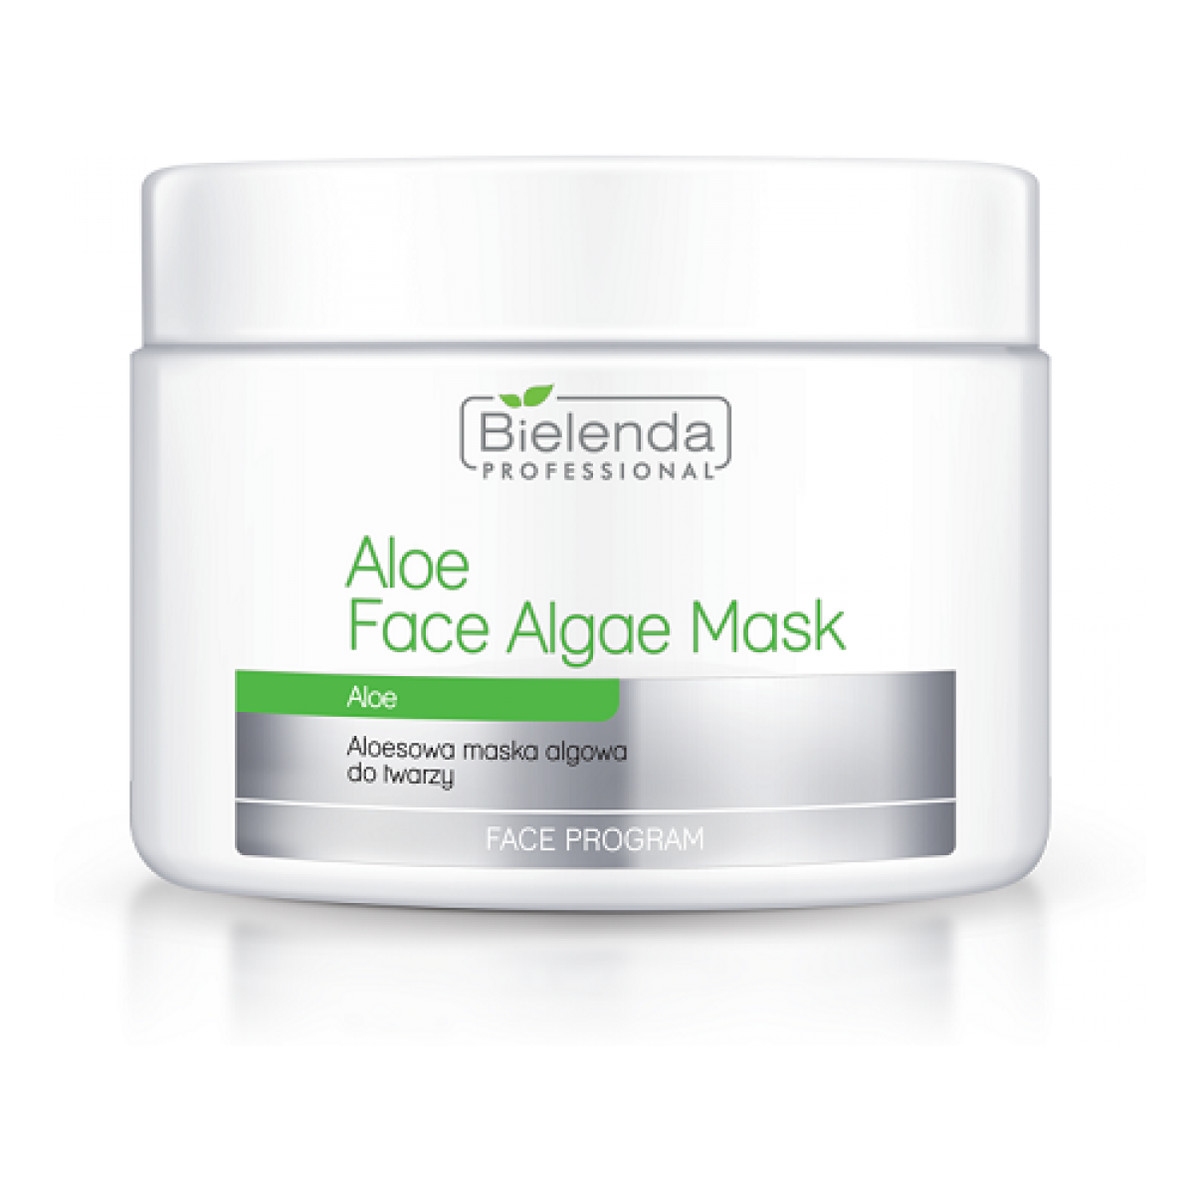 Bielenda Professional Face Algae Mask Aloesowa Maska Algowa Do Twarzy 190g